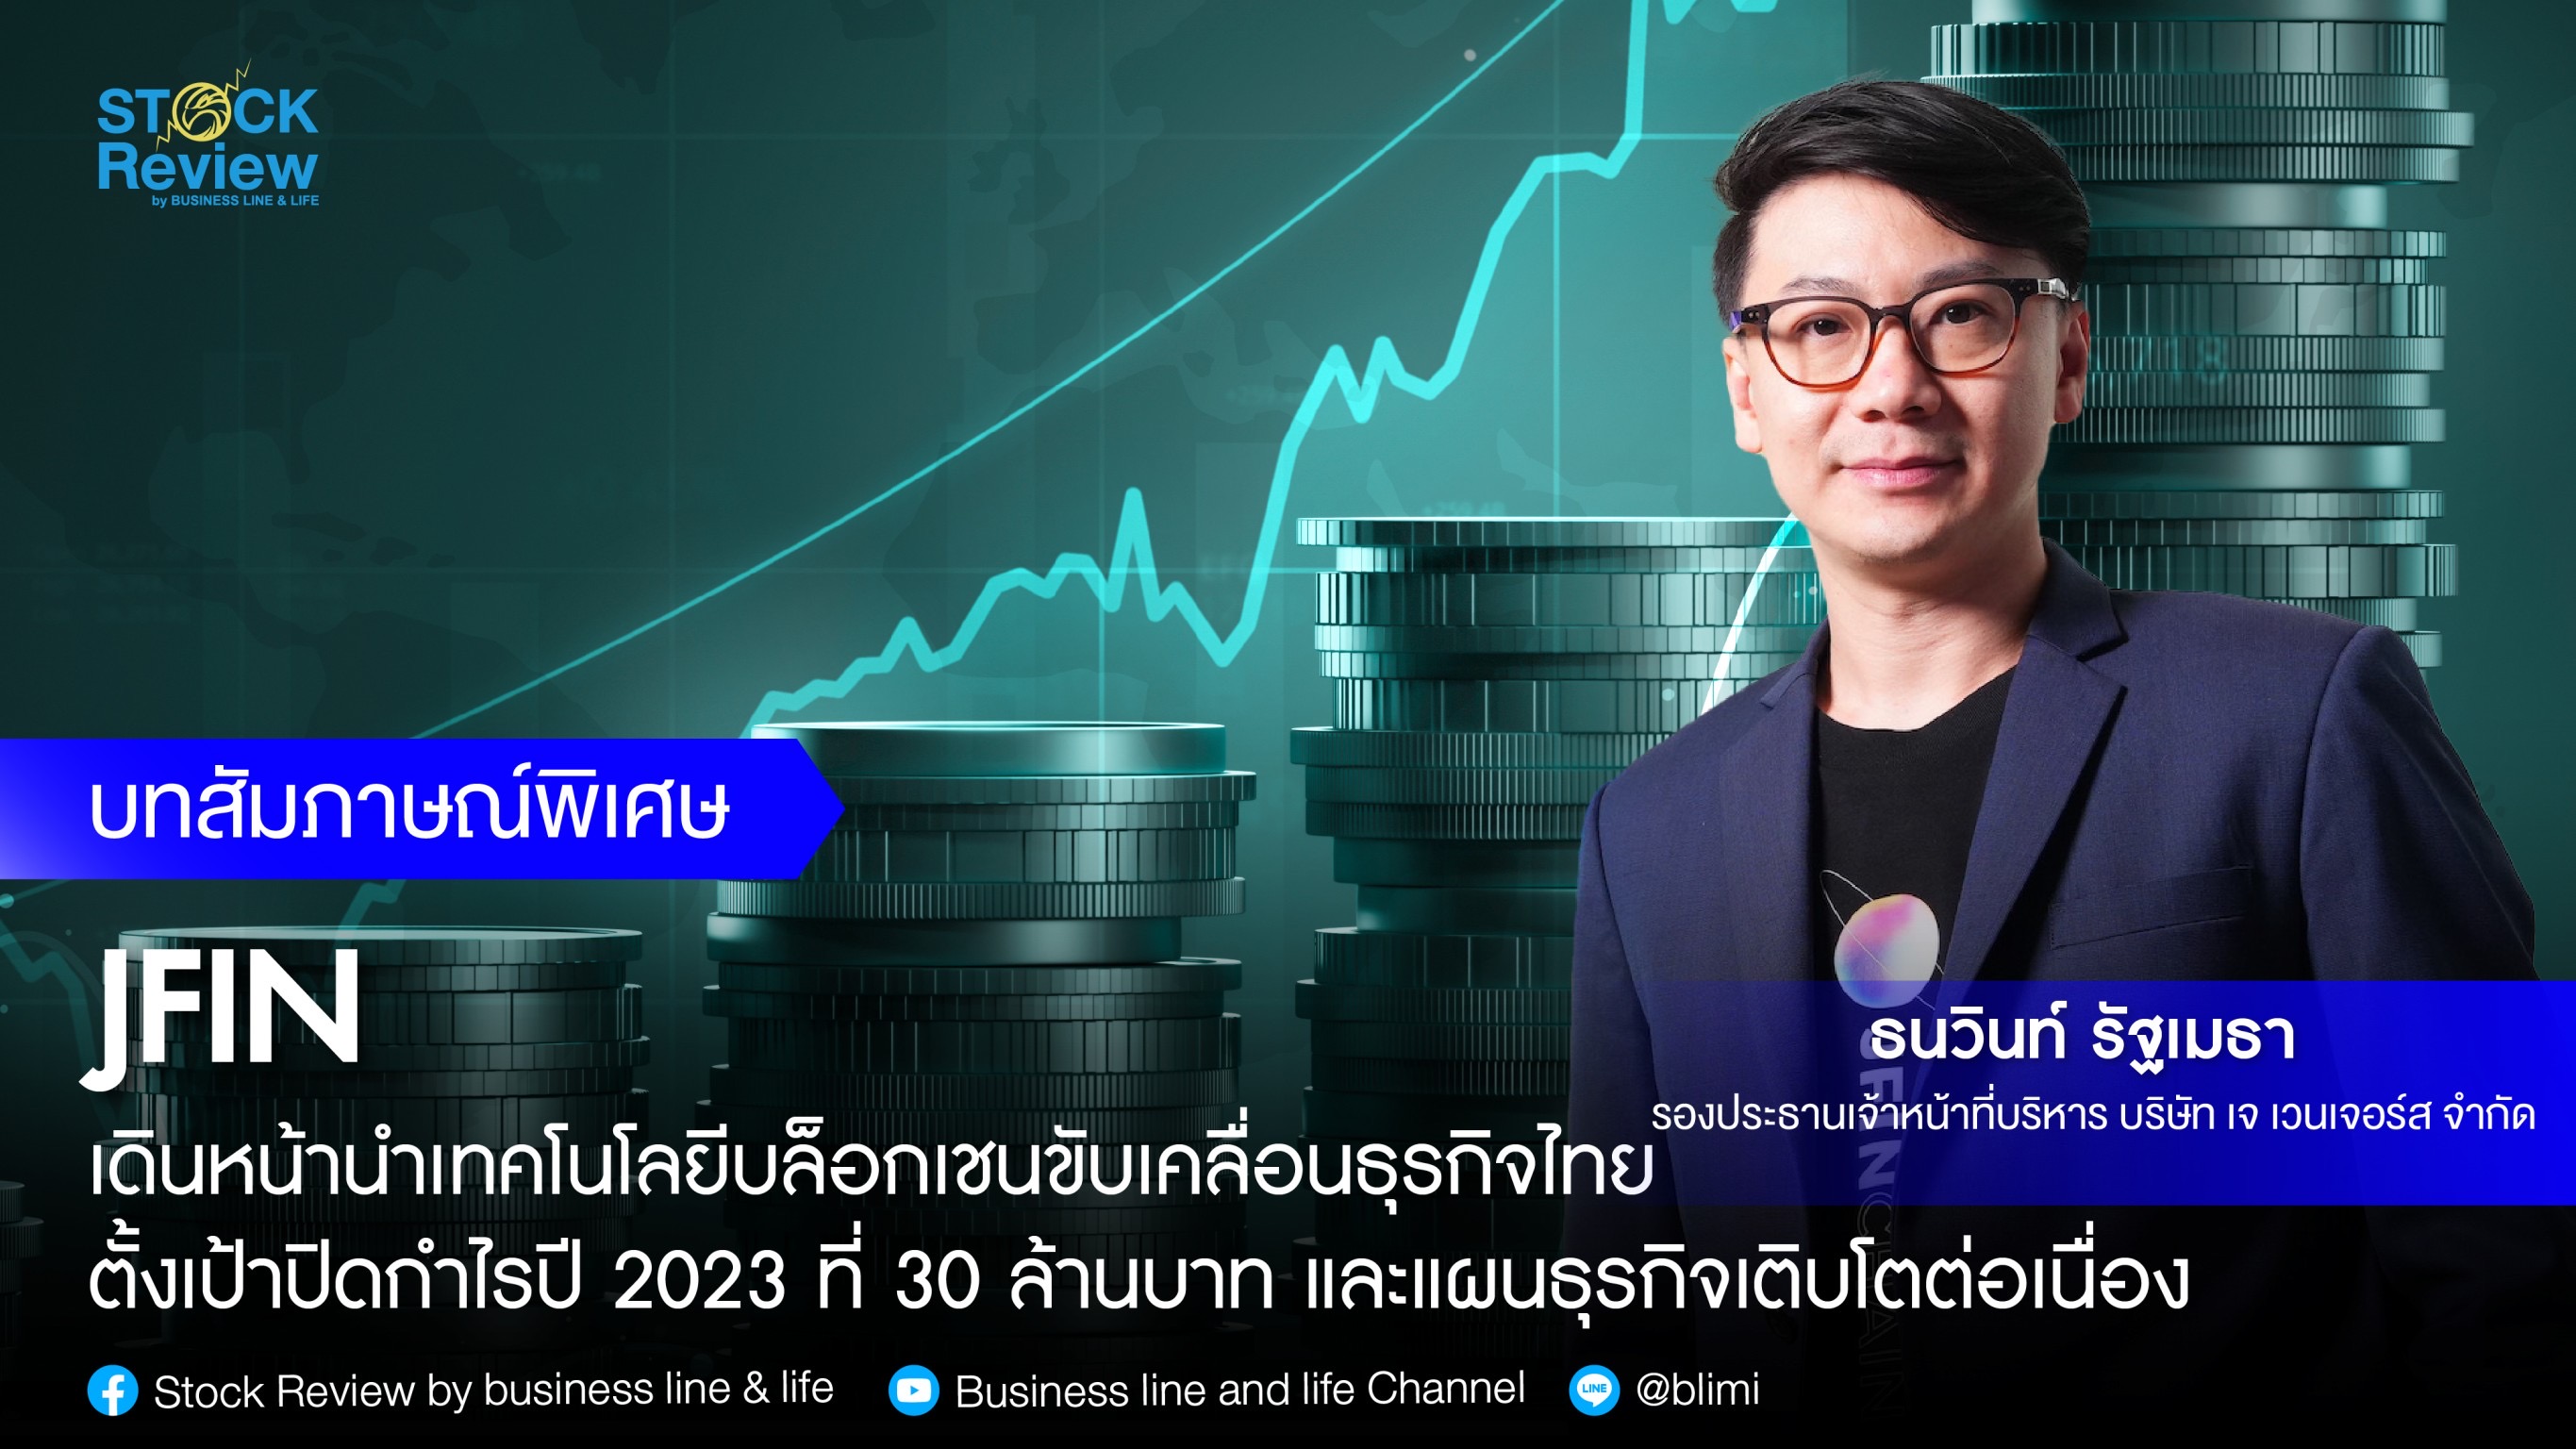 JFIN เดินหน้านำเทคโนโลยีบล็อกเชนขับเคลื่อนธุรกิจไทย ตั้งเป้าปิดกำไรปี 2023 ที่ 30 ล้านบาท และแผนธุรกิจเติบโตต่อเนื่อง